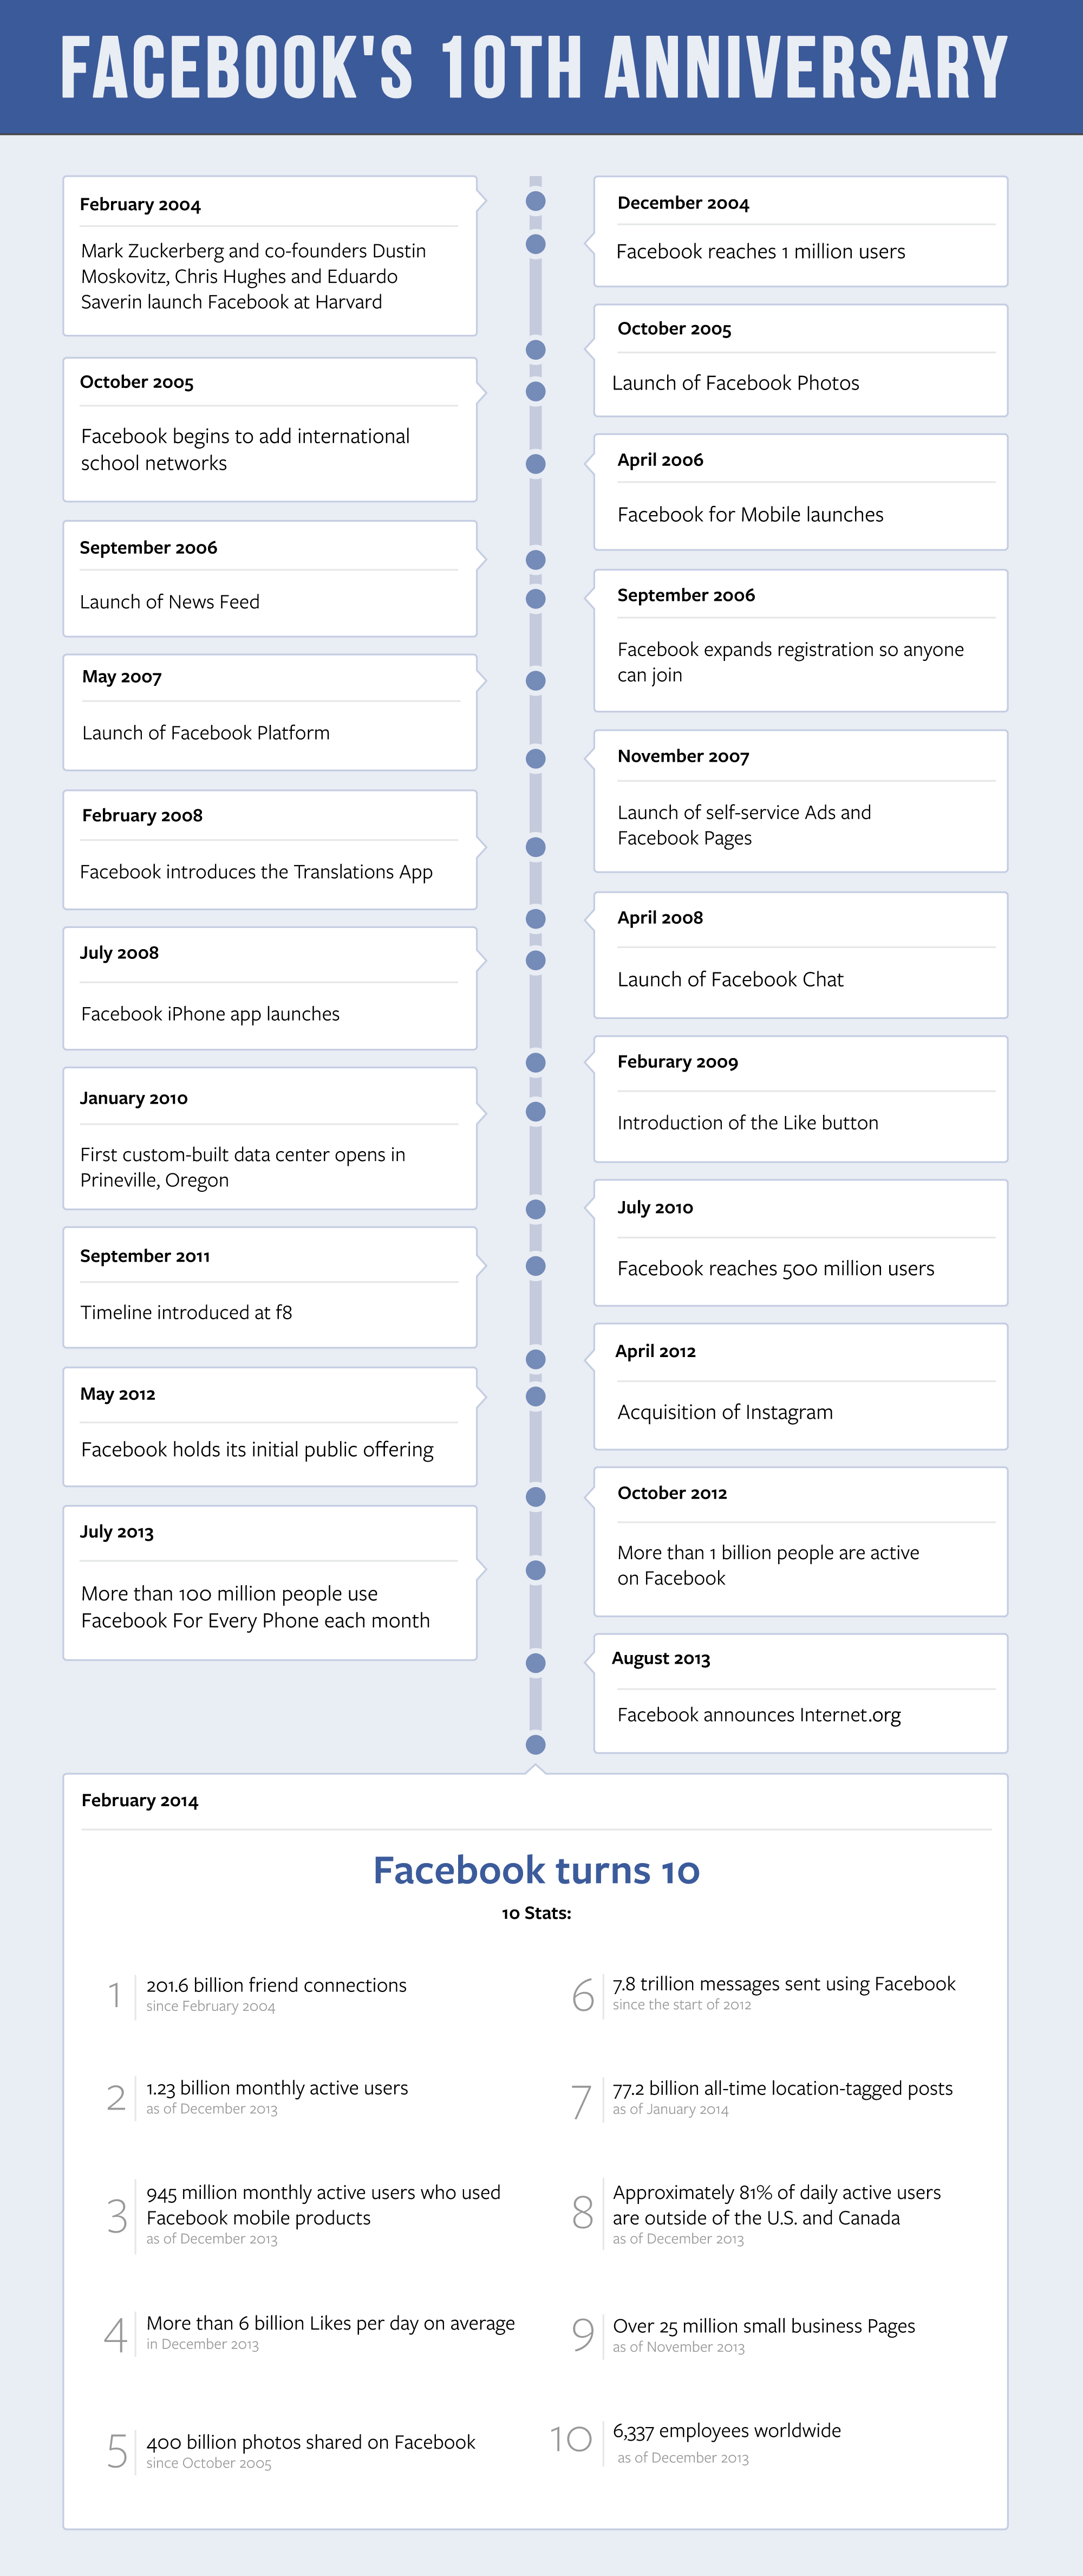 إطار زمني يوضح أبرز التغييرات في فيسبوك منذ إطلاقه 